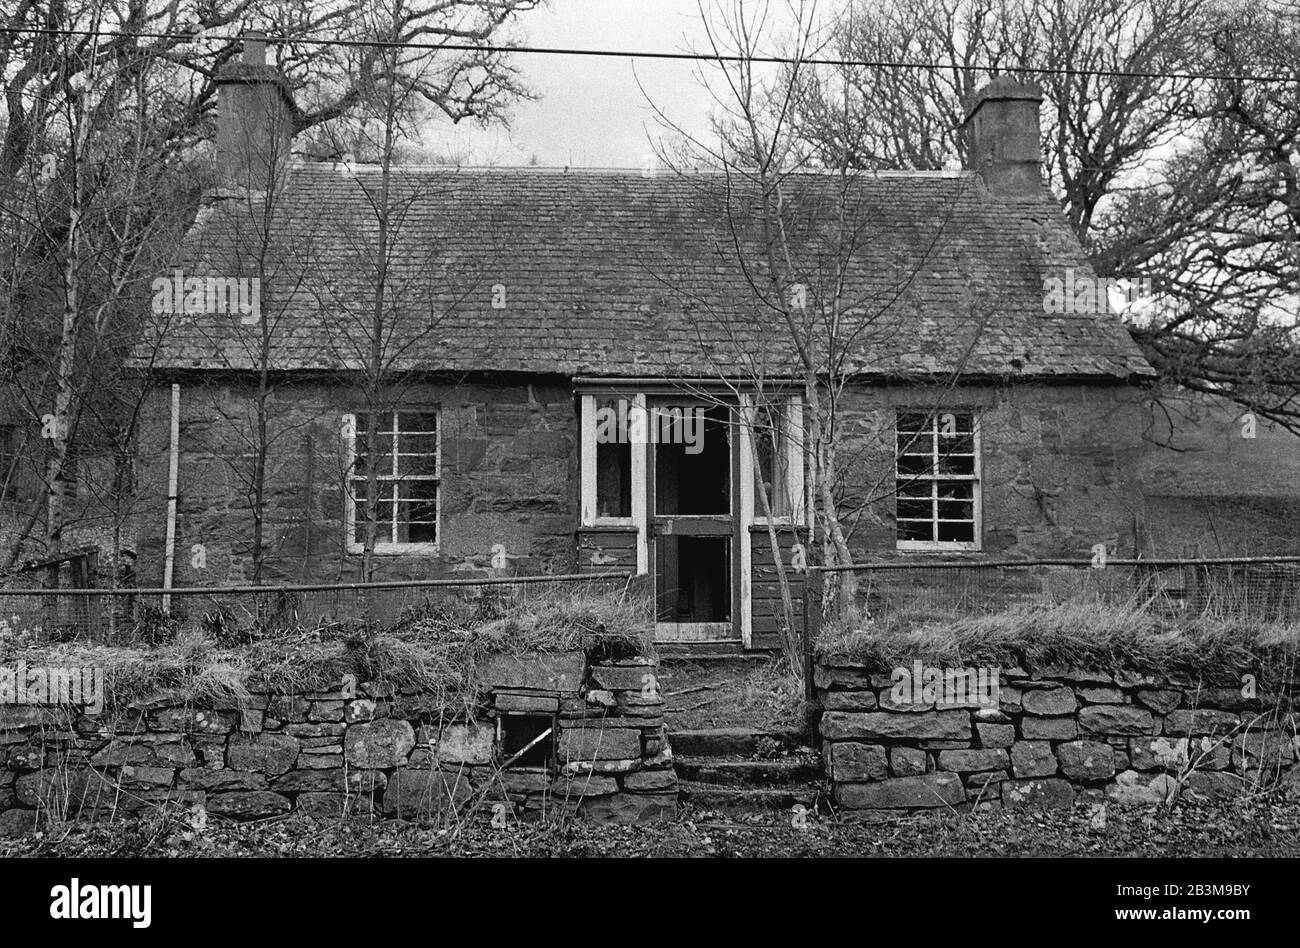 Un cottage abandonné en Écosse rurale. Cela a été pris entre 2005-2006 sur le film photographique. Banque D'Images